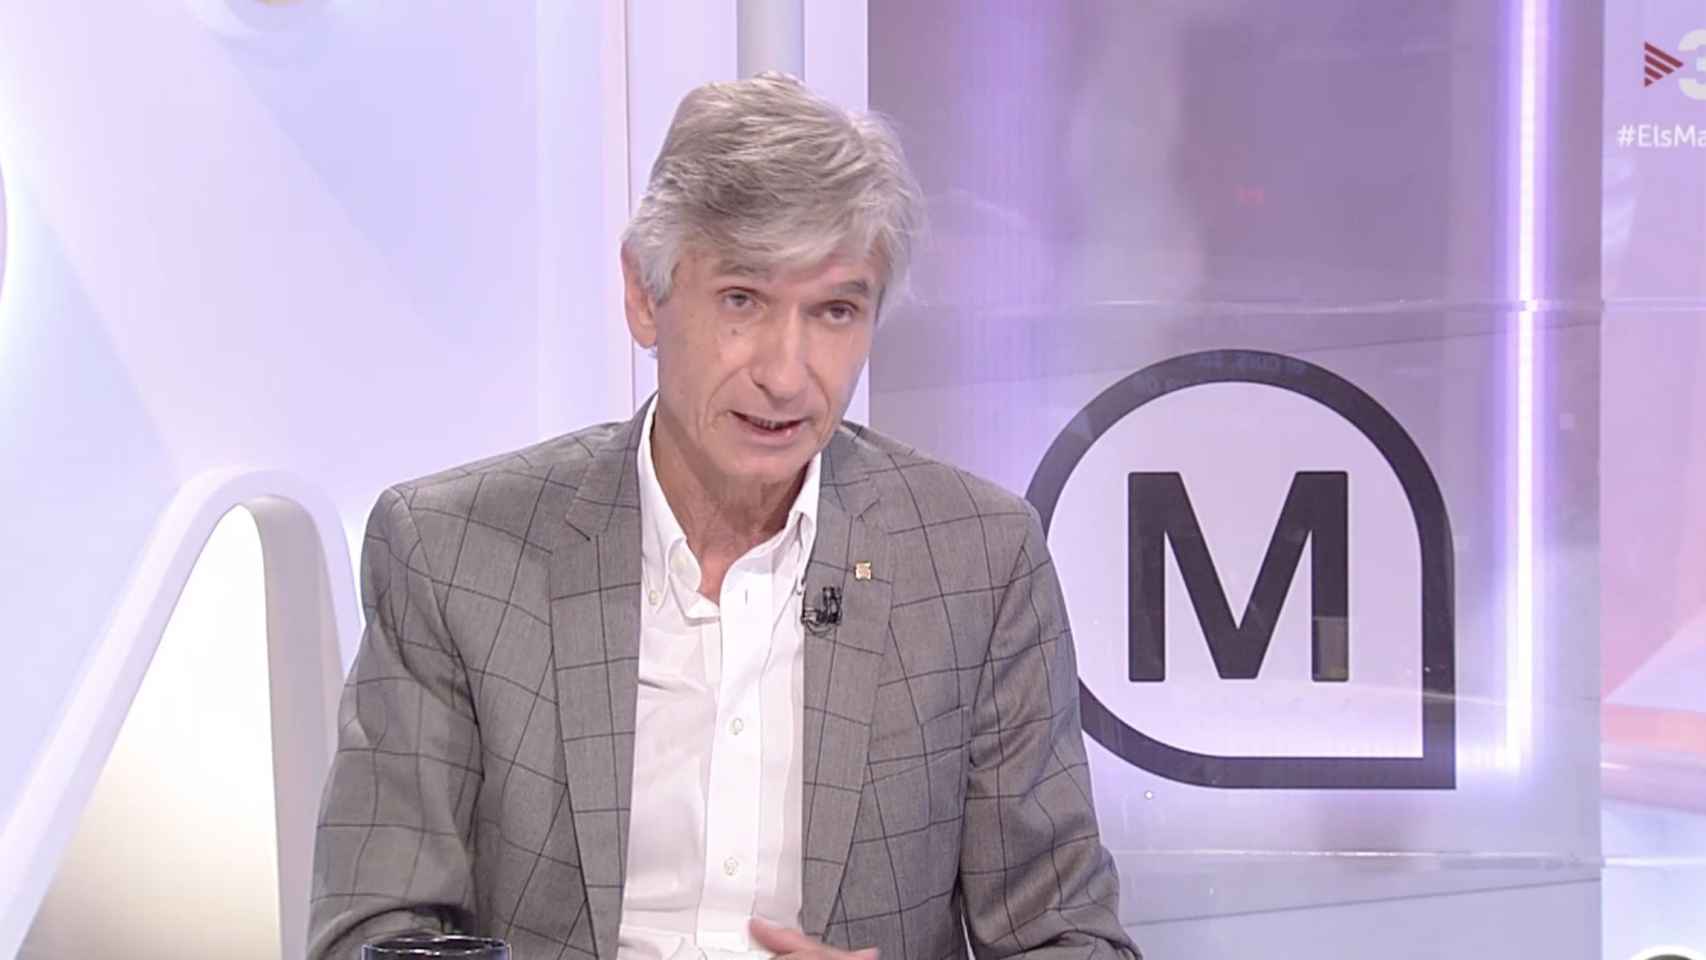 El conseller de Salut, Josep Maria Argimon, durante la entrevista en TV3 / TV3